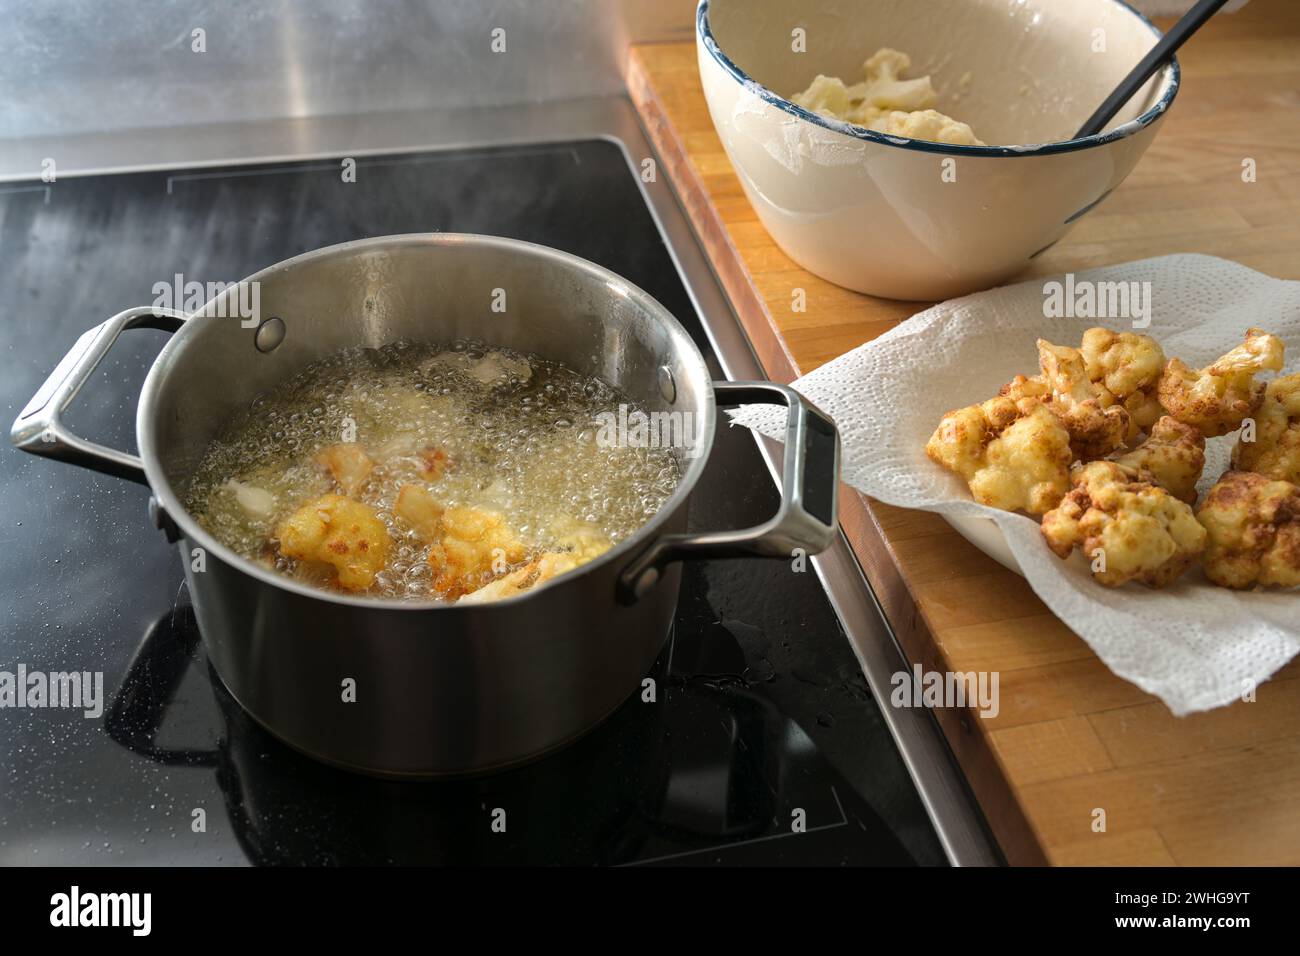 Frittierter Blumenkohl in der Verarbeitung, in heißem Speiseöl in einem Topf braten, auf einem Papiertuch trocknen und roh in einer Schüssel, Zubereitung von Stockfoto